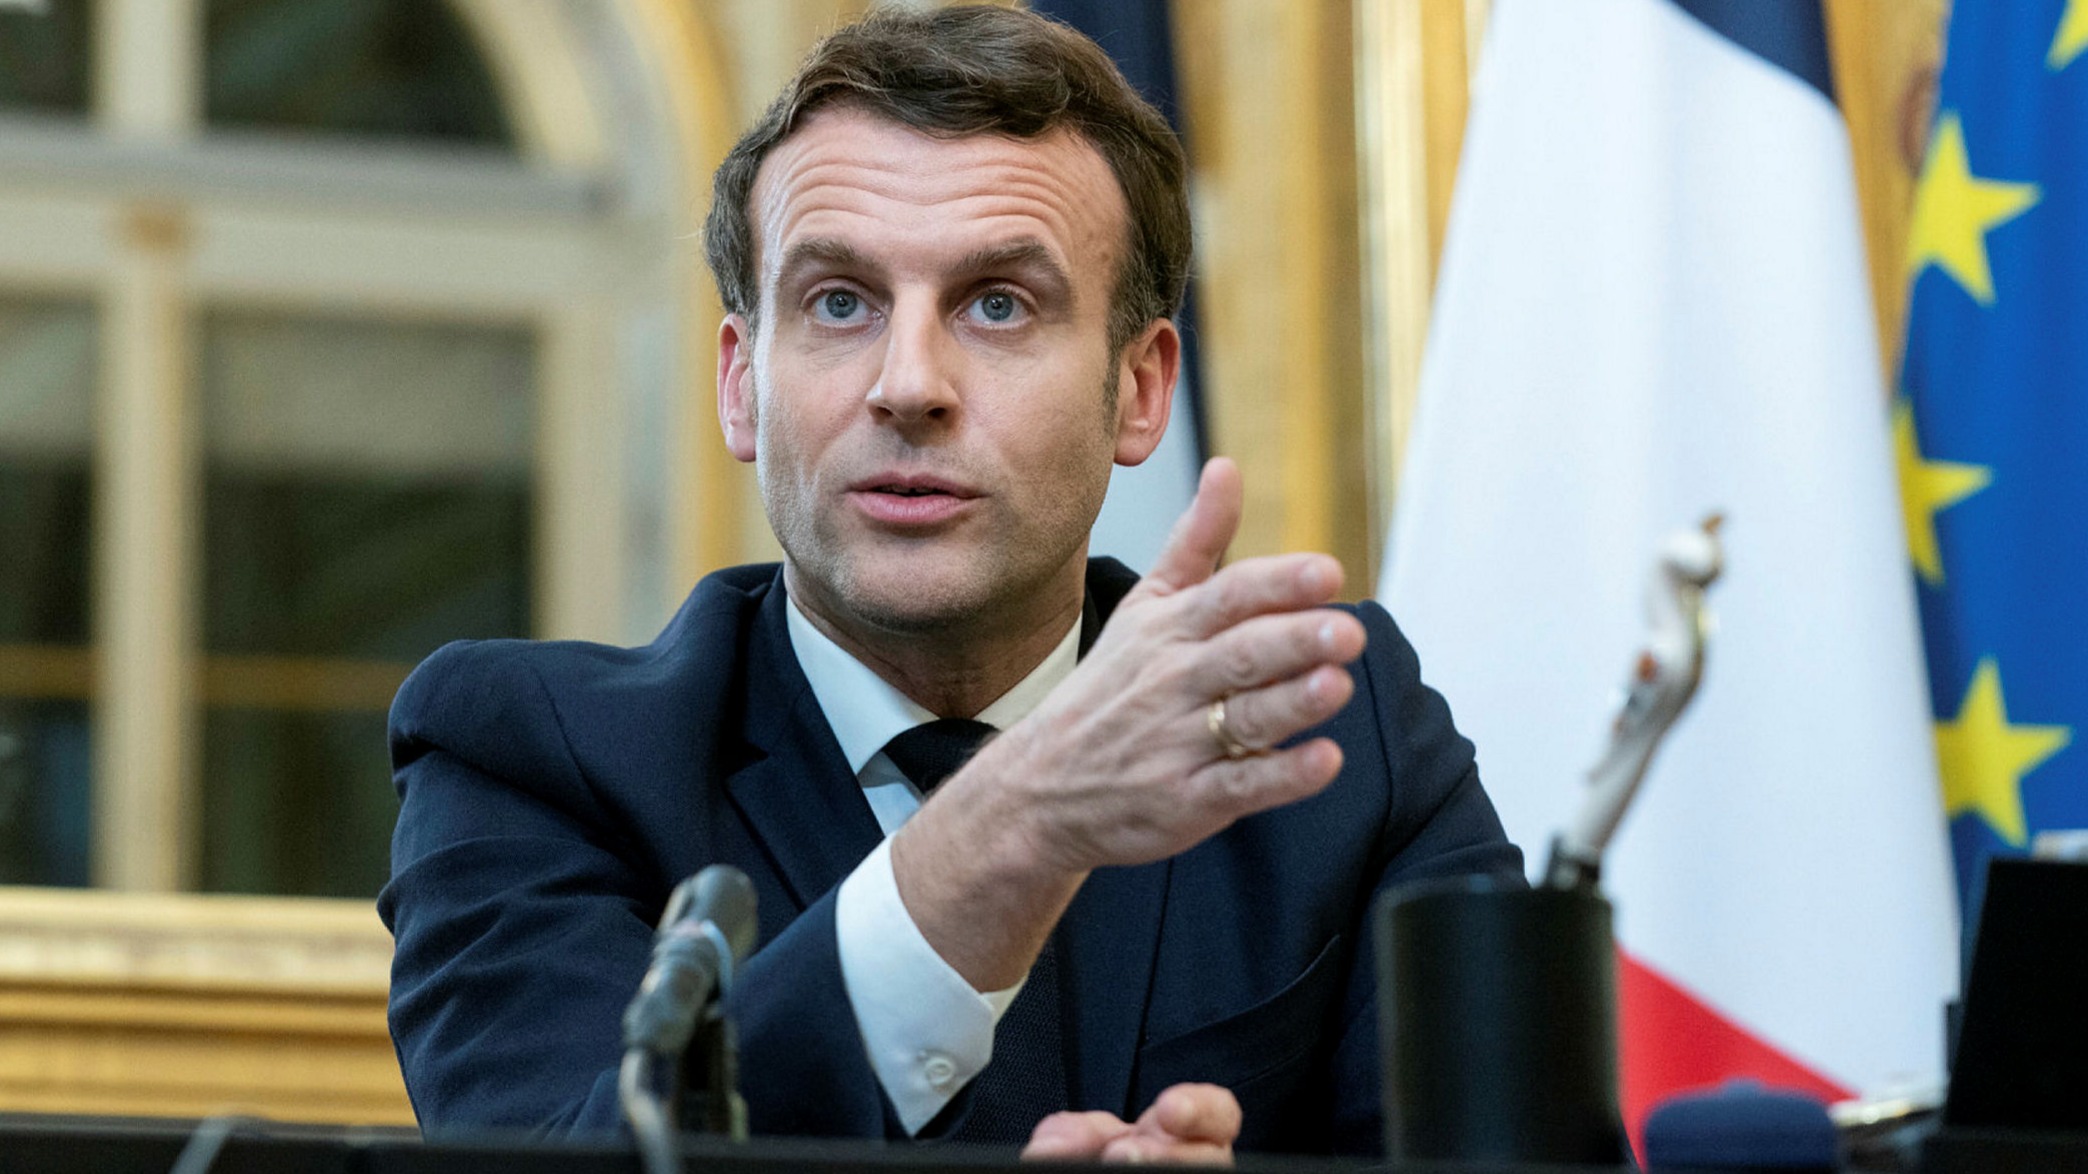 Covid-19 : Emmanuel Macron accusé de ne pas respecter les gestes barrières ! La vidéo polémique